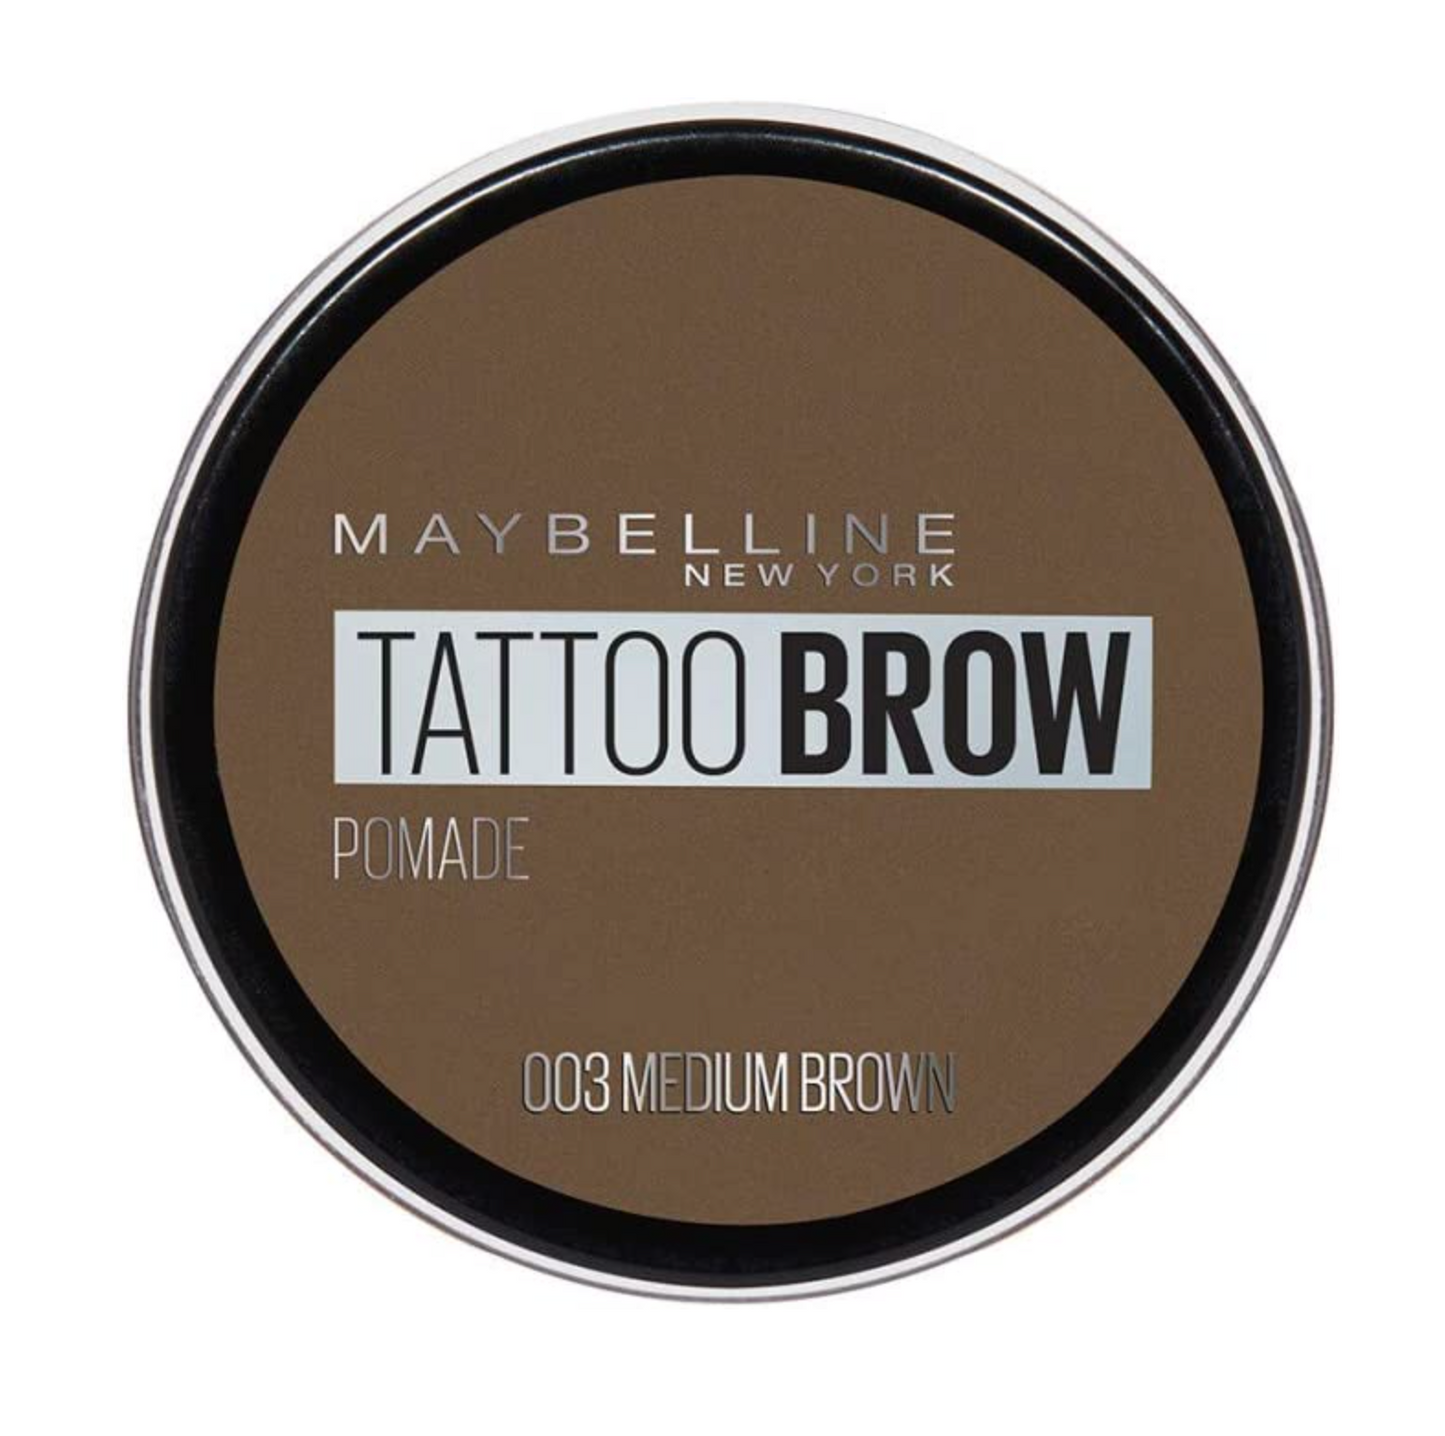 Maybelline Tattoo Brow Waterproof Pomade - 03 Medium Brown